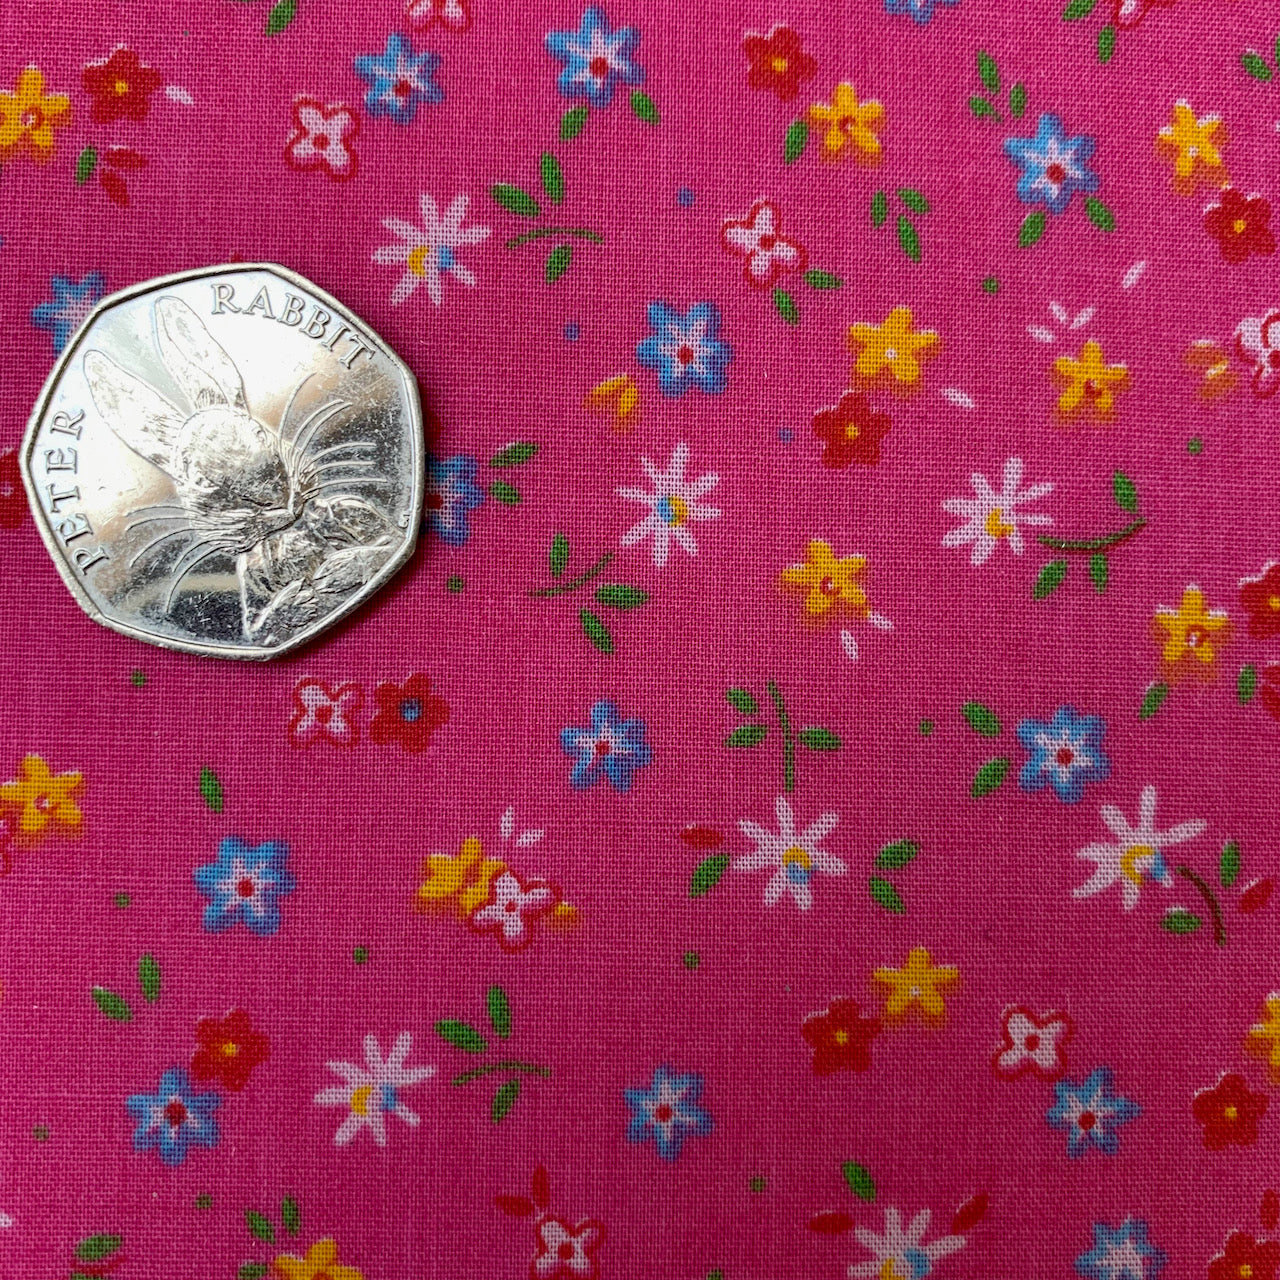 Fabric Felt Sheet - Pink Floral